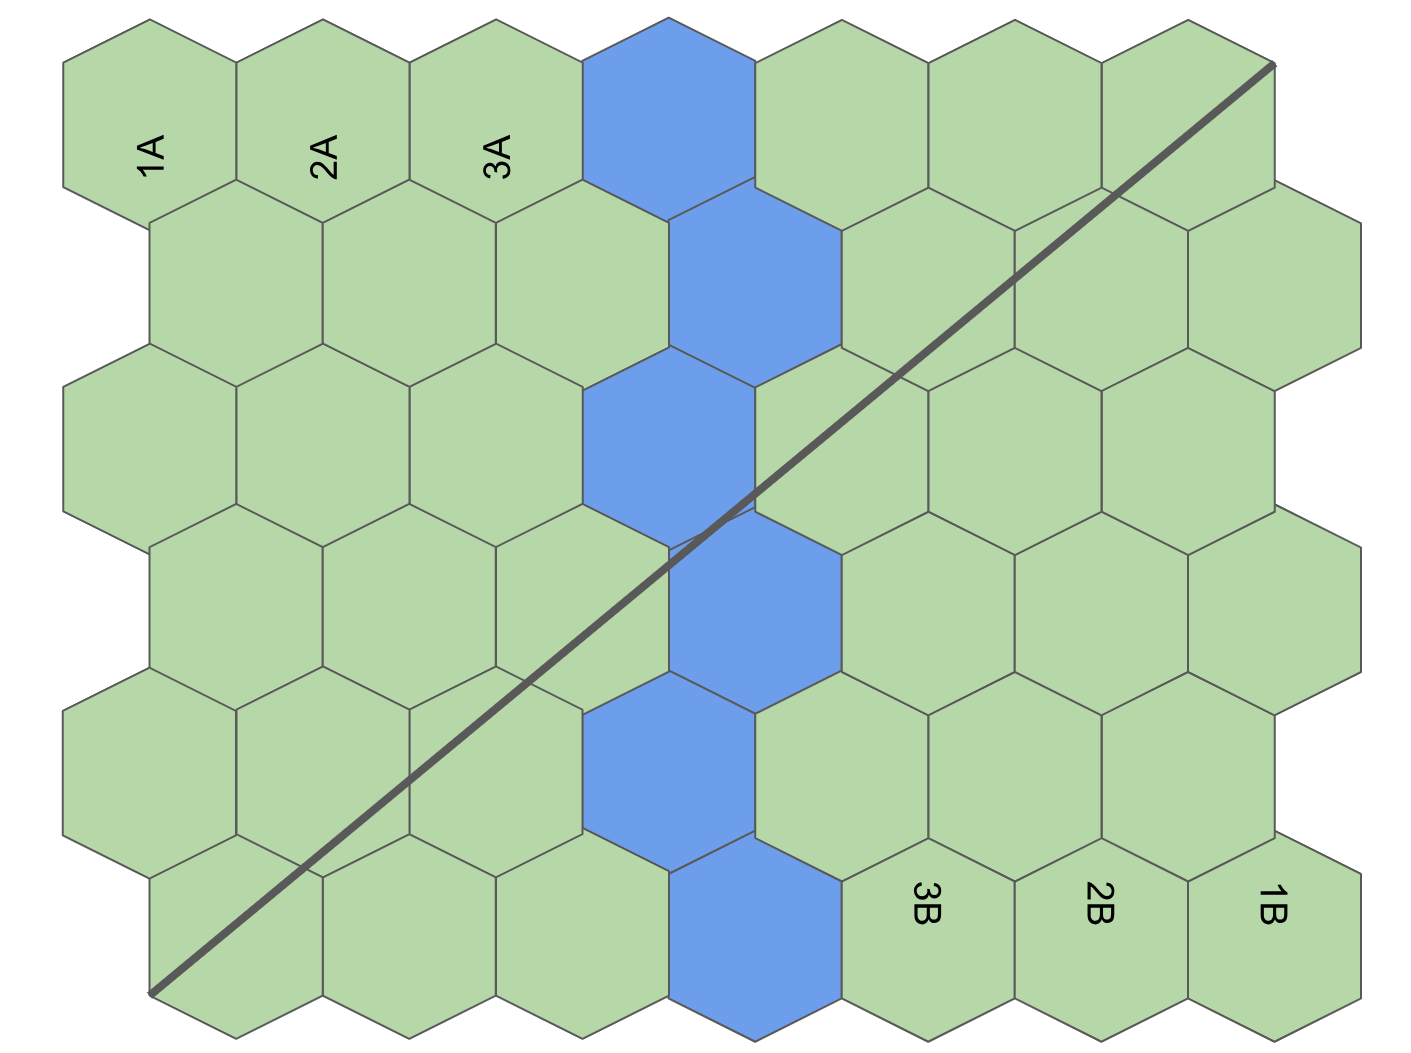 Exemples de déplacements et de designs de plateaux carrés vs hexagonaux